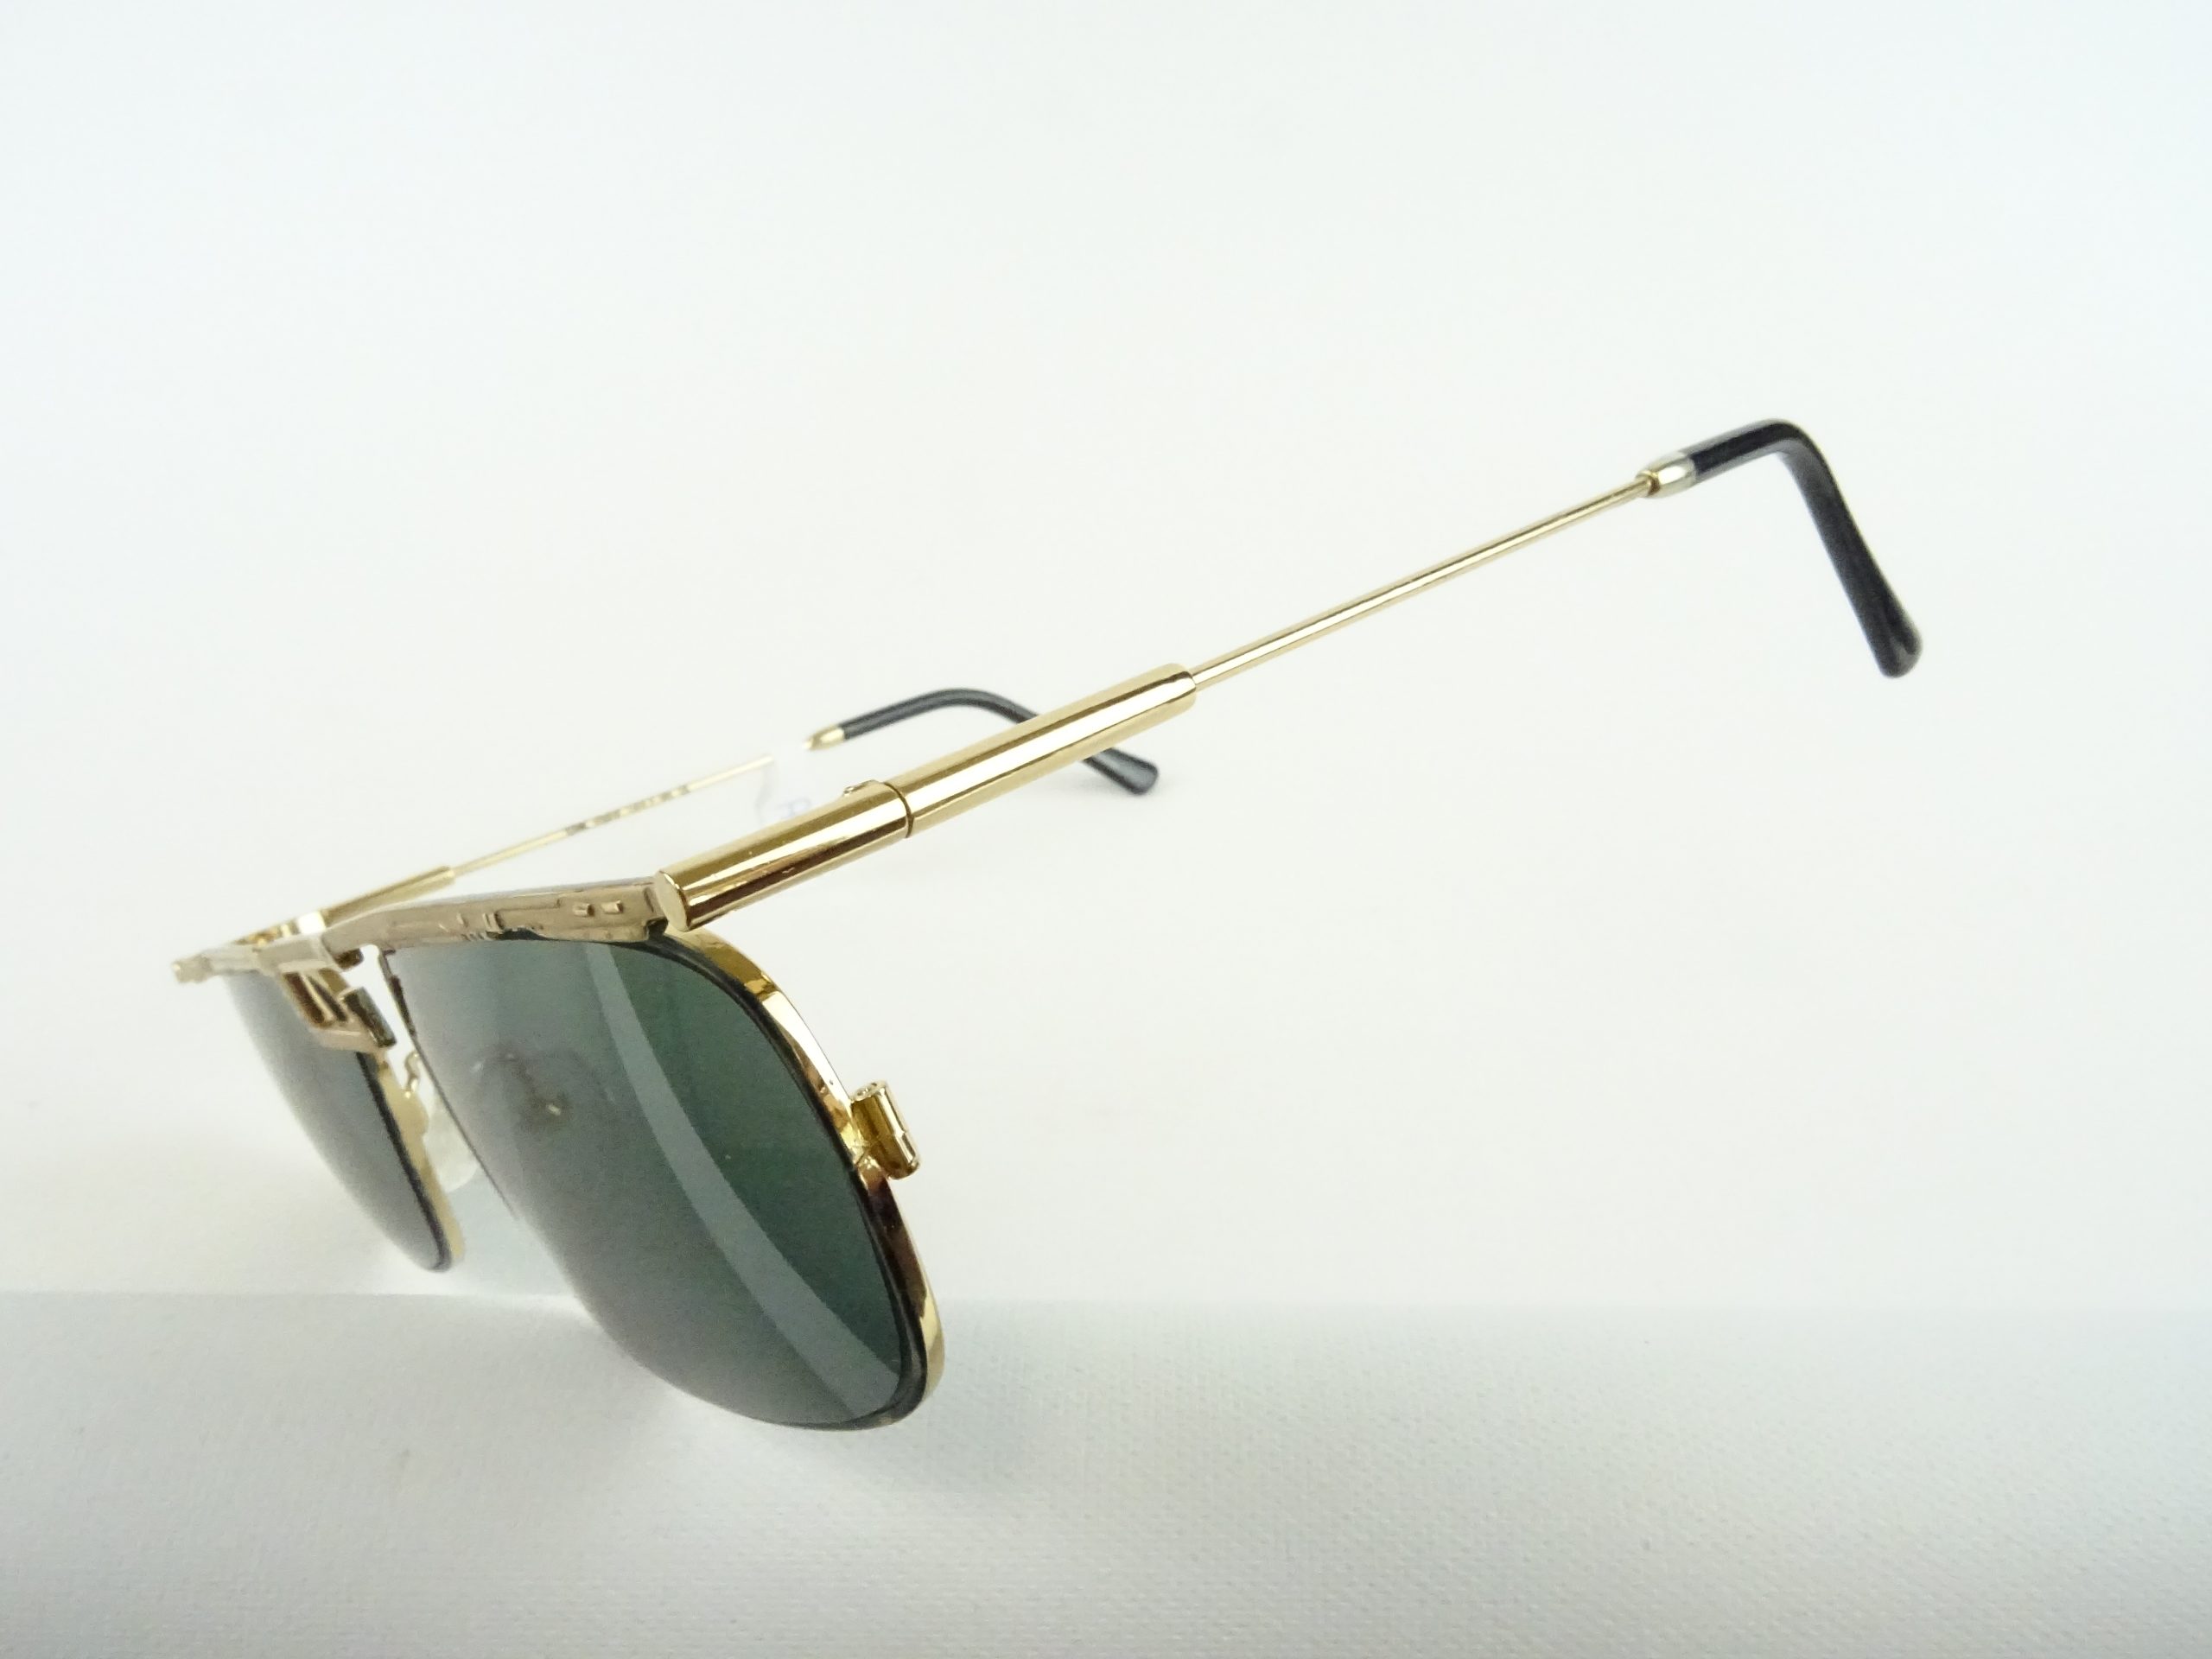 Herren-Sonnenbrille L Balkenbrillen – Kopfform Welt Gr. Vintage große/breite UV Schutz Chai/Italy getönte Gläser mit Brillen